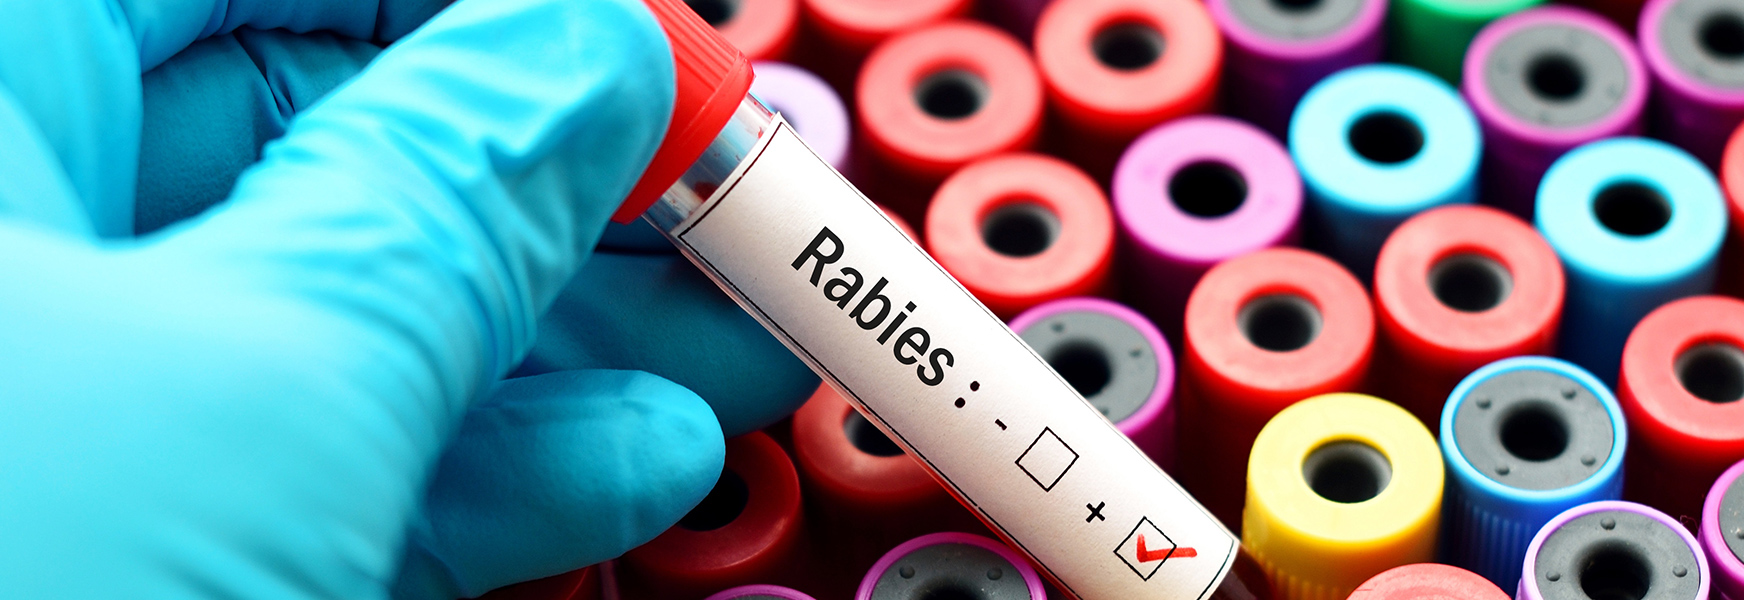 Rabies test